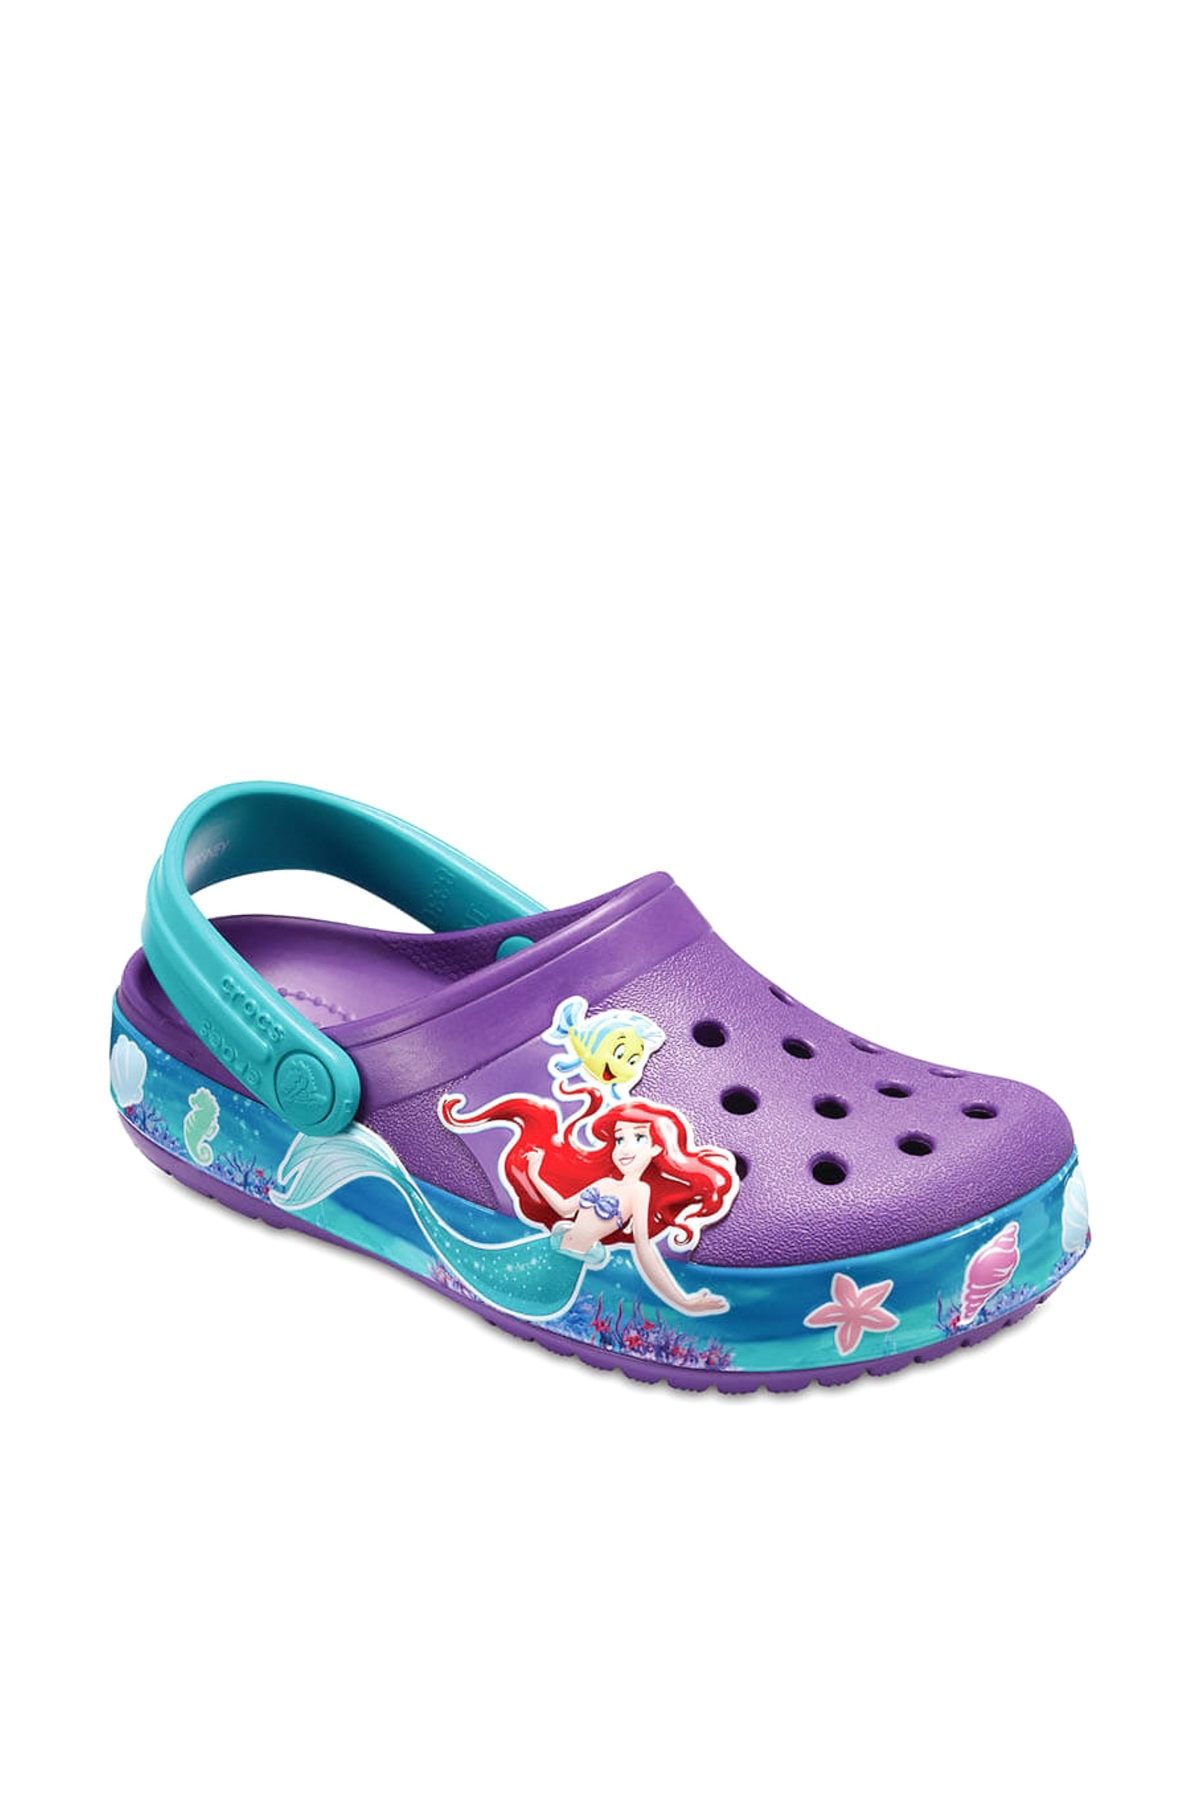 Crocs Mor Disney Kız Çocuk Sandalet 205213-57H